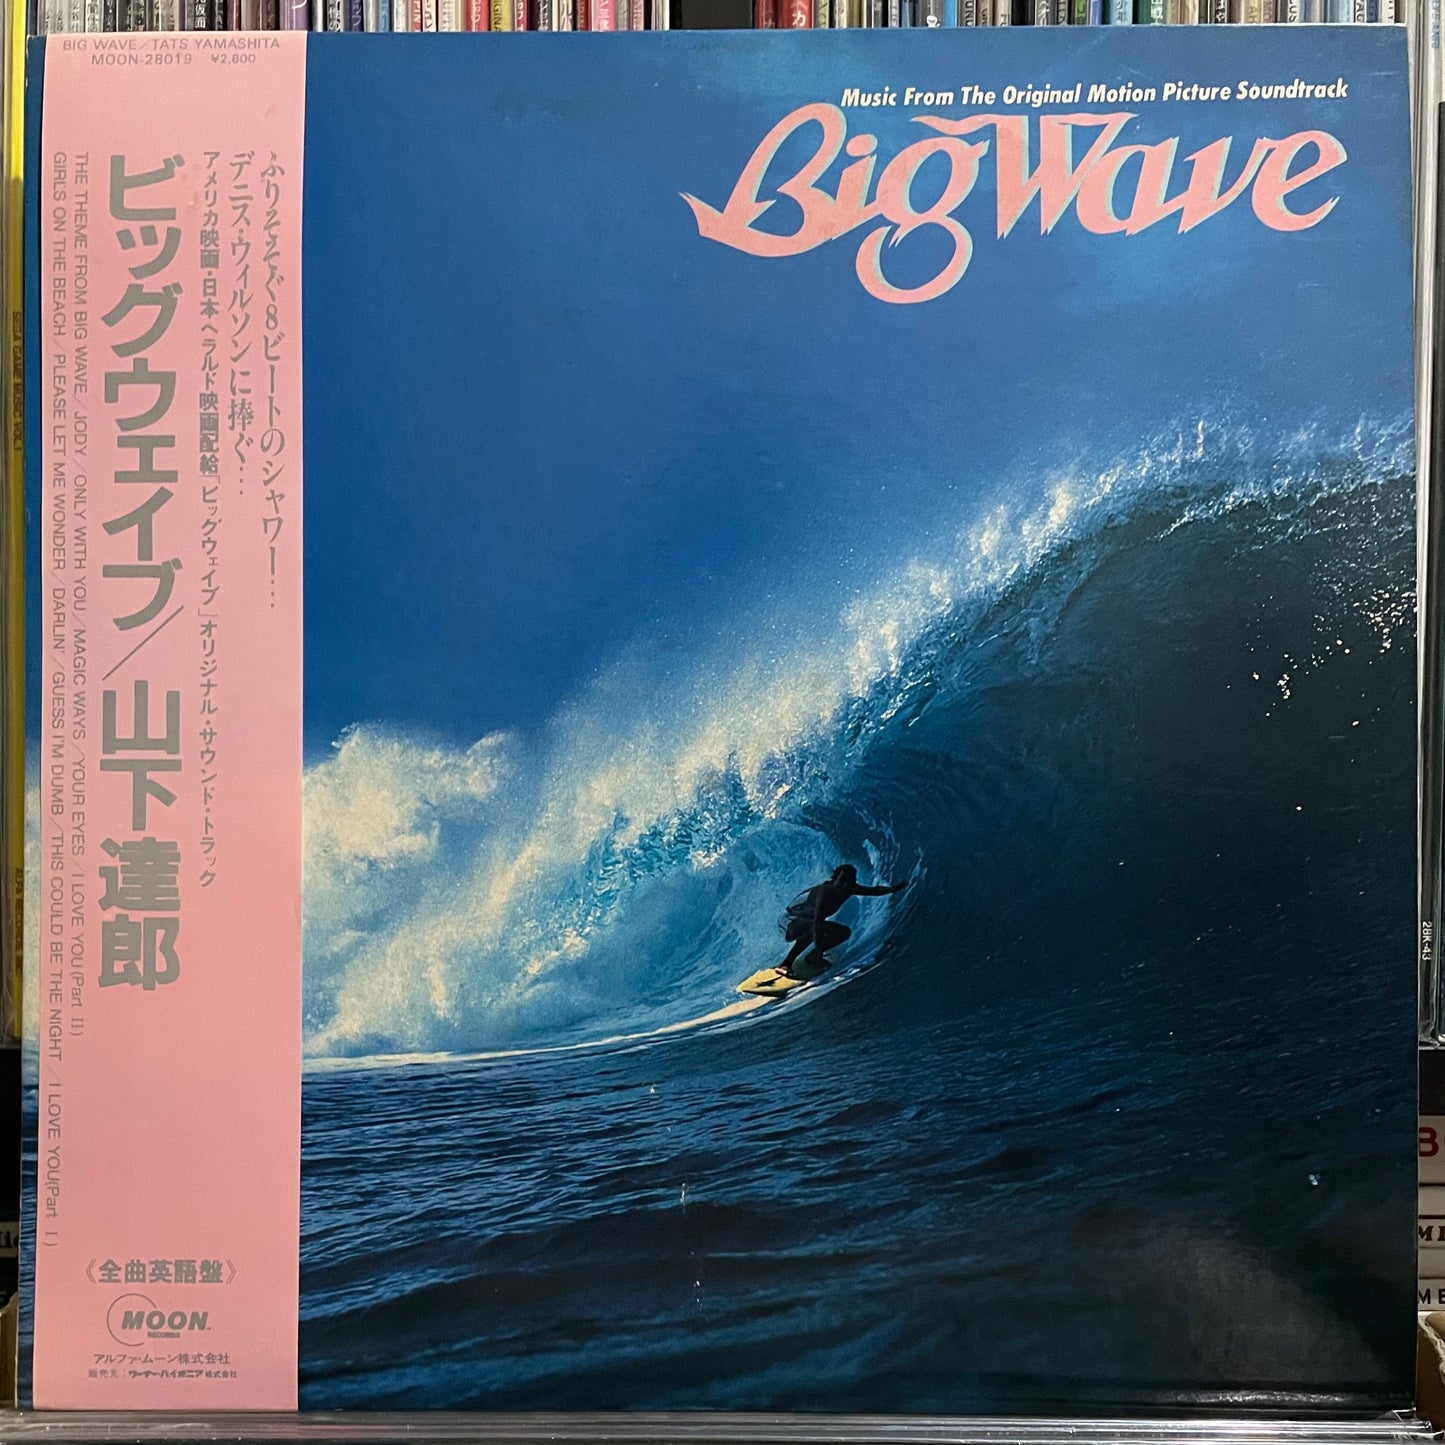 Tatsuro Yamashita “Big Wave” (1984)